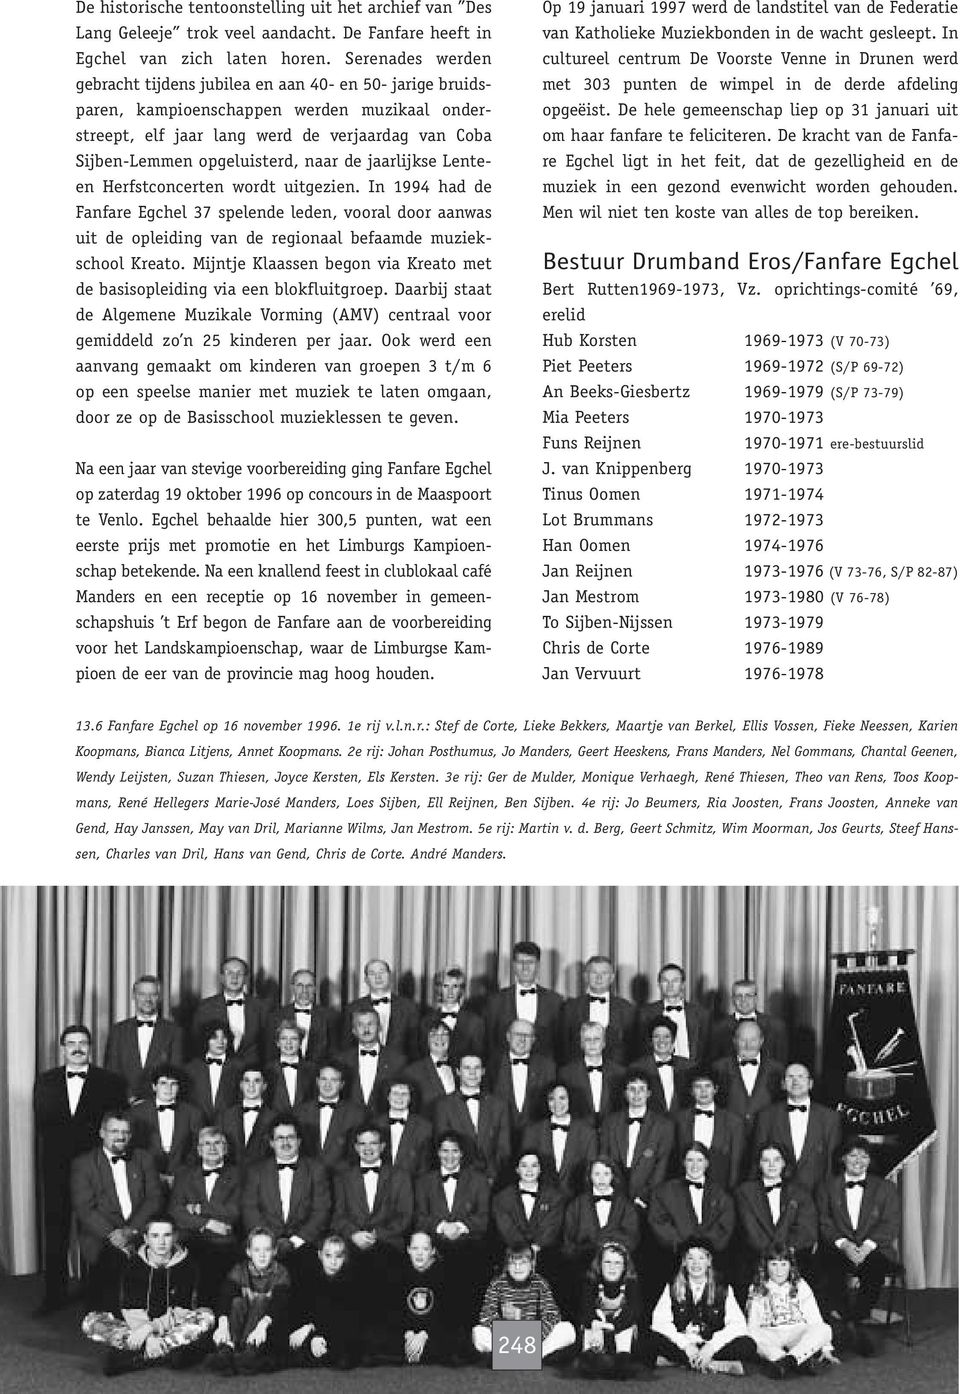 naar de jaarlijkse Lenteen Herfstconcerten wordt uitgezien. In 1994 had de Fanfare Egchel 37 spelende leden, vooral door aanwas uit de opleiding van de regionaal befaamde muziekschool Kreato.